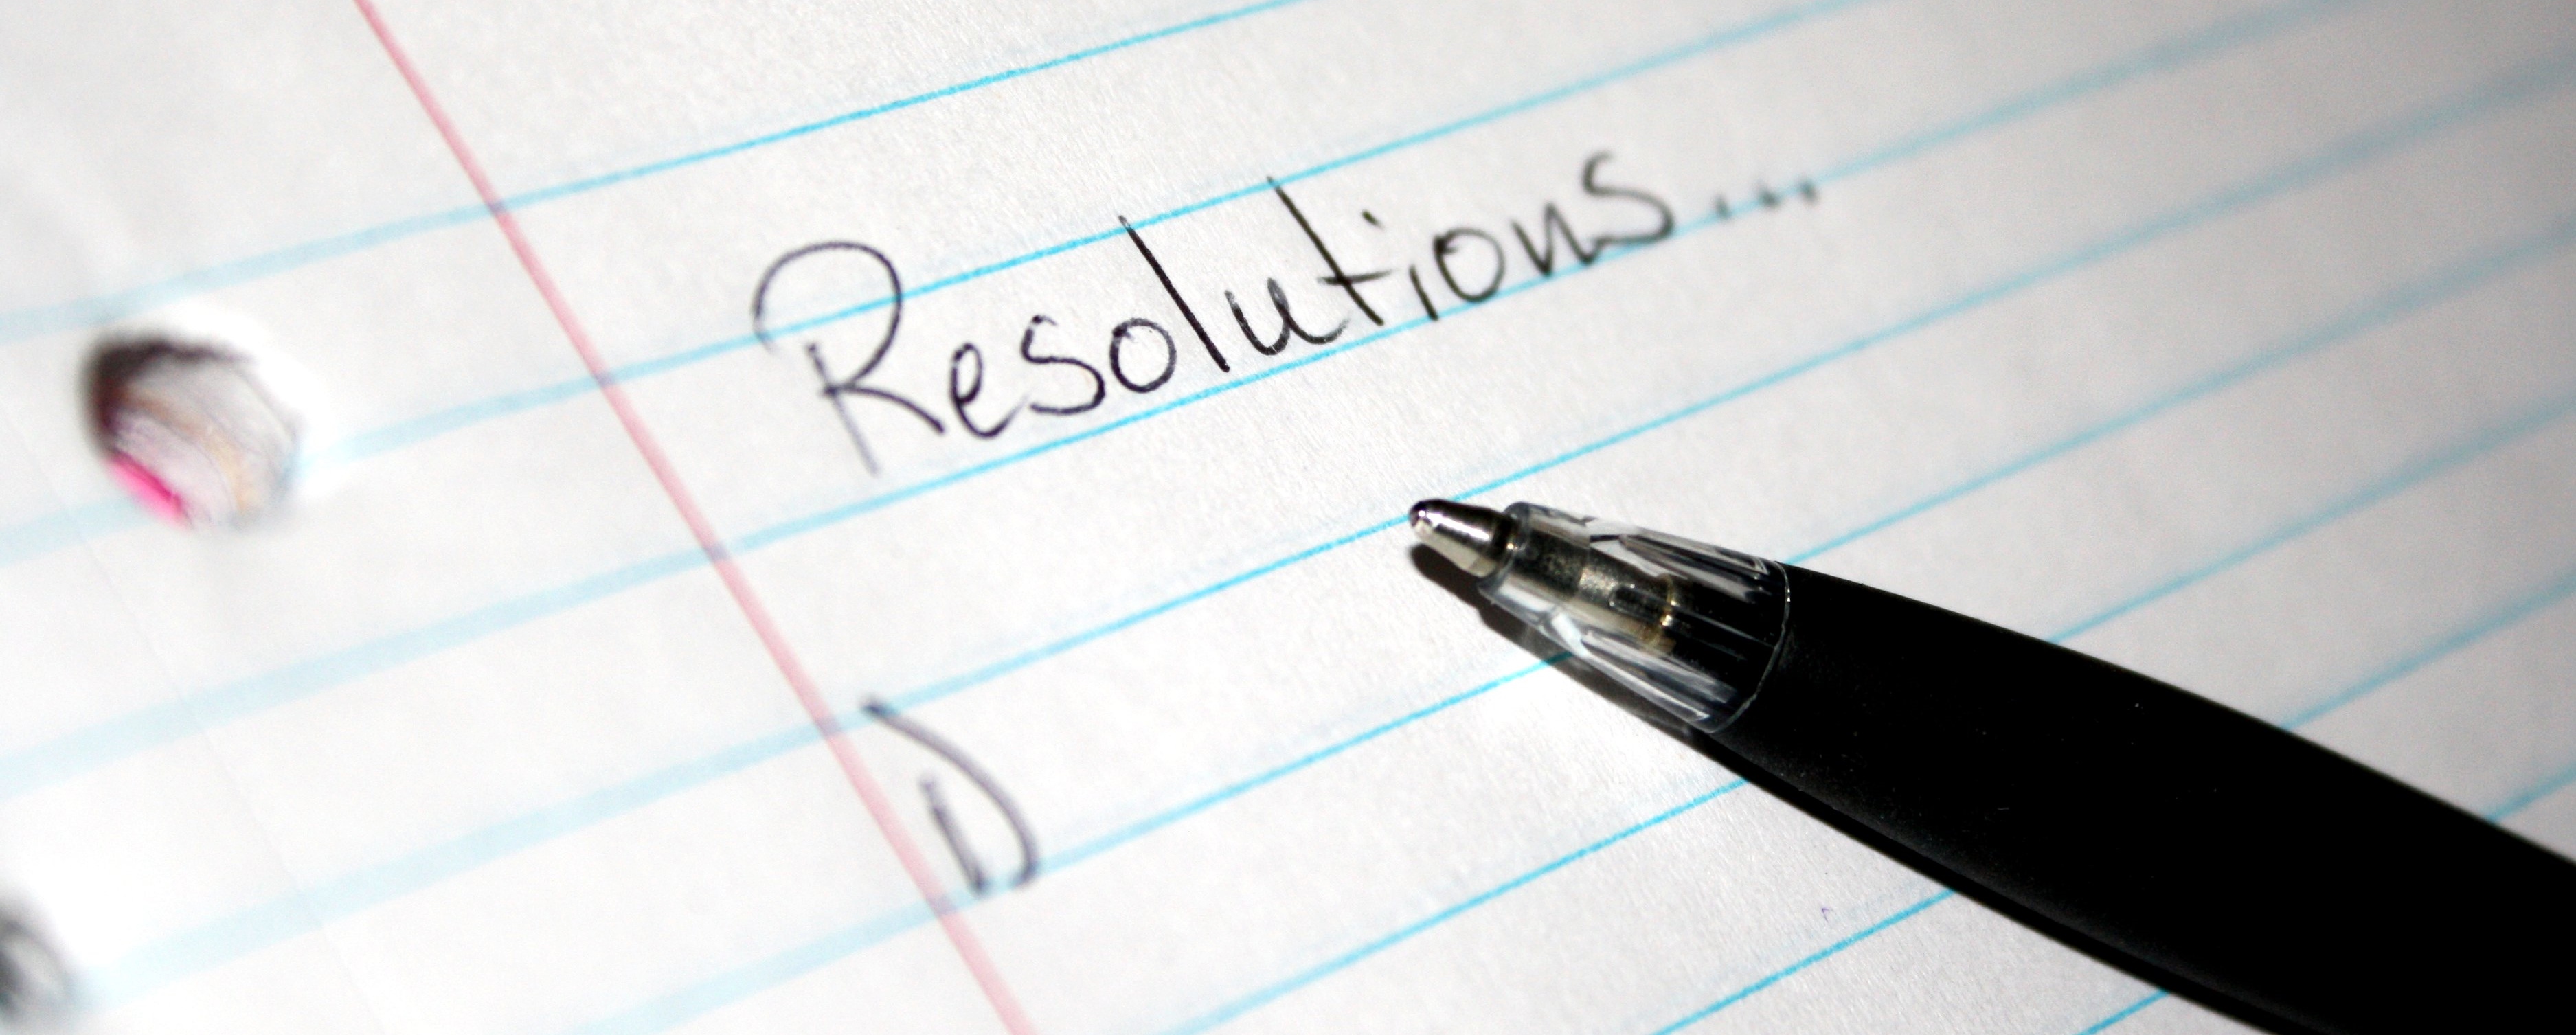 Liste de resolutions